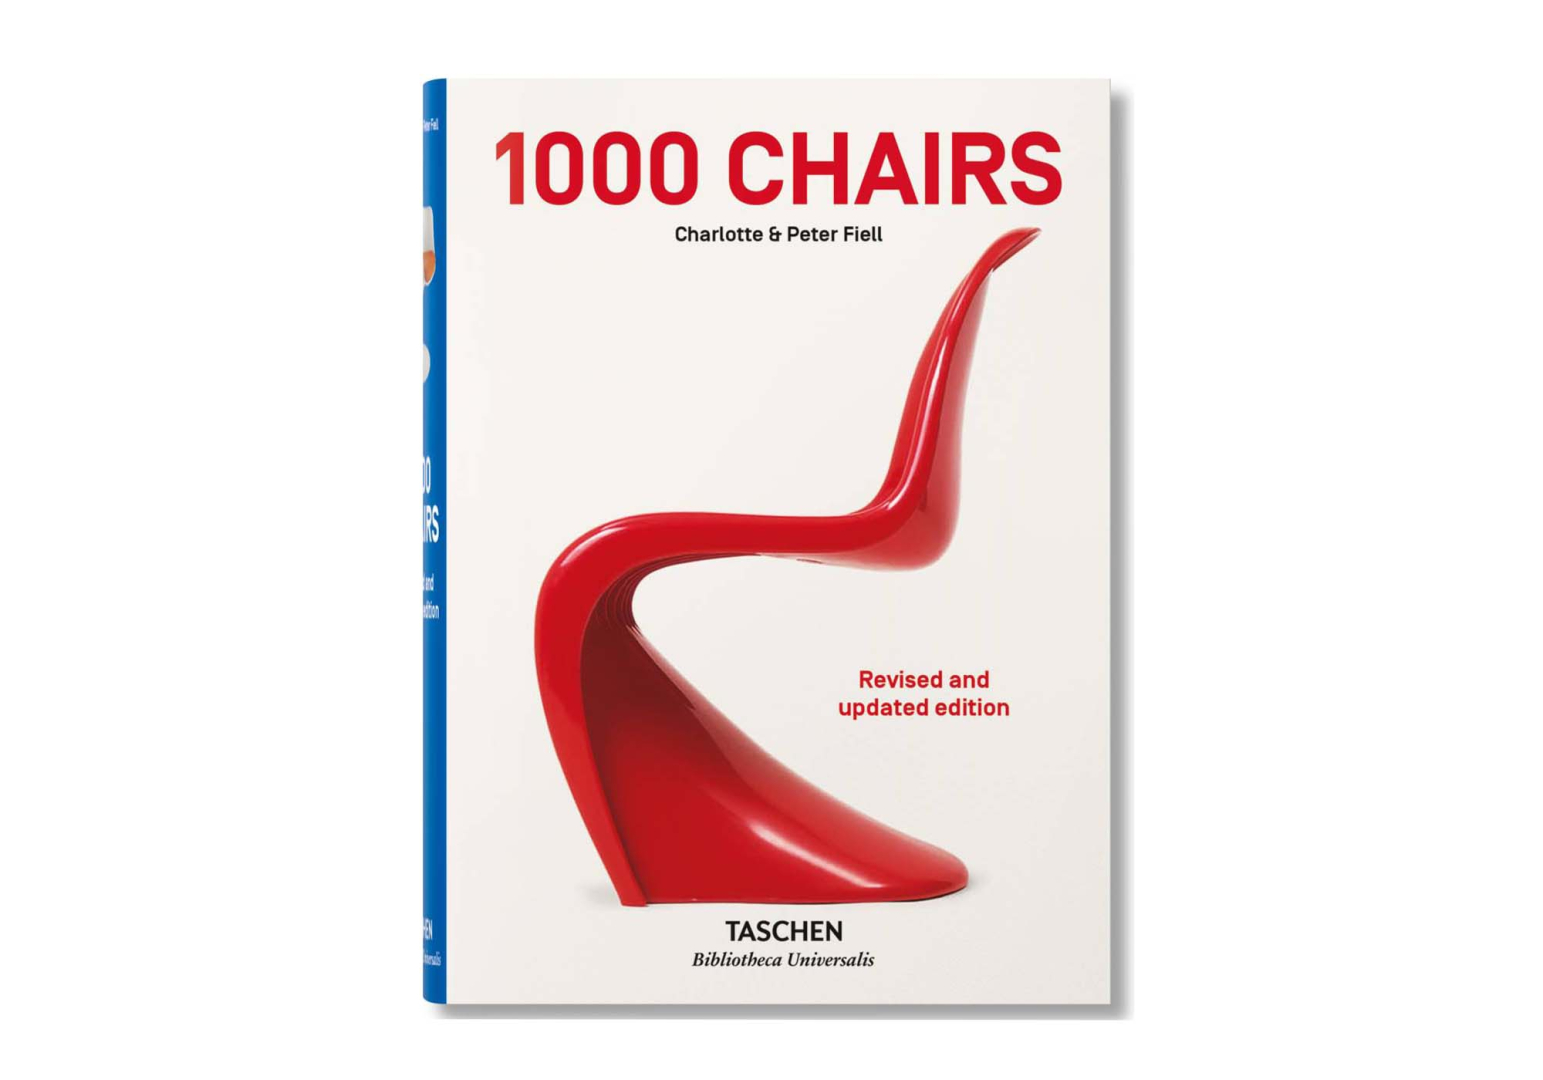 Livre 1000 Chairs - TASCHEN